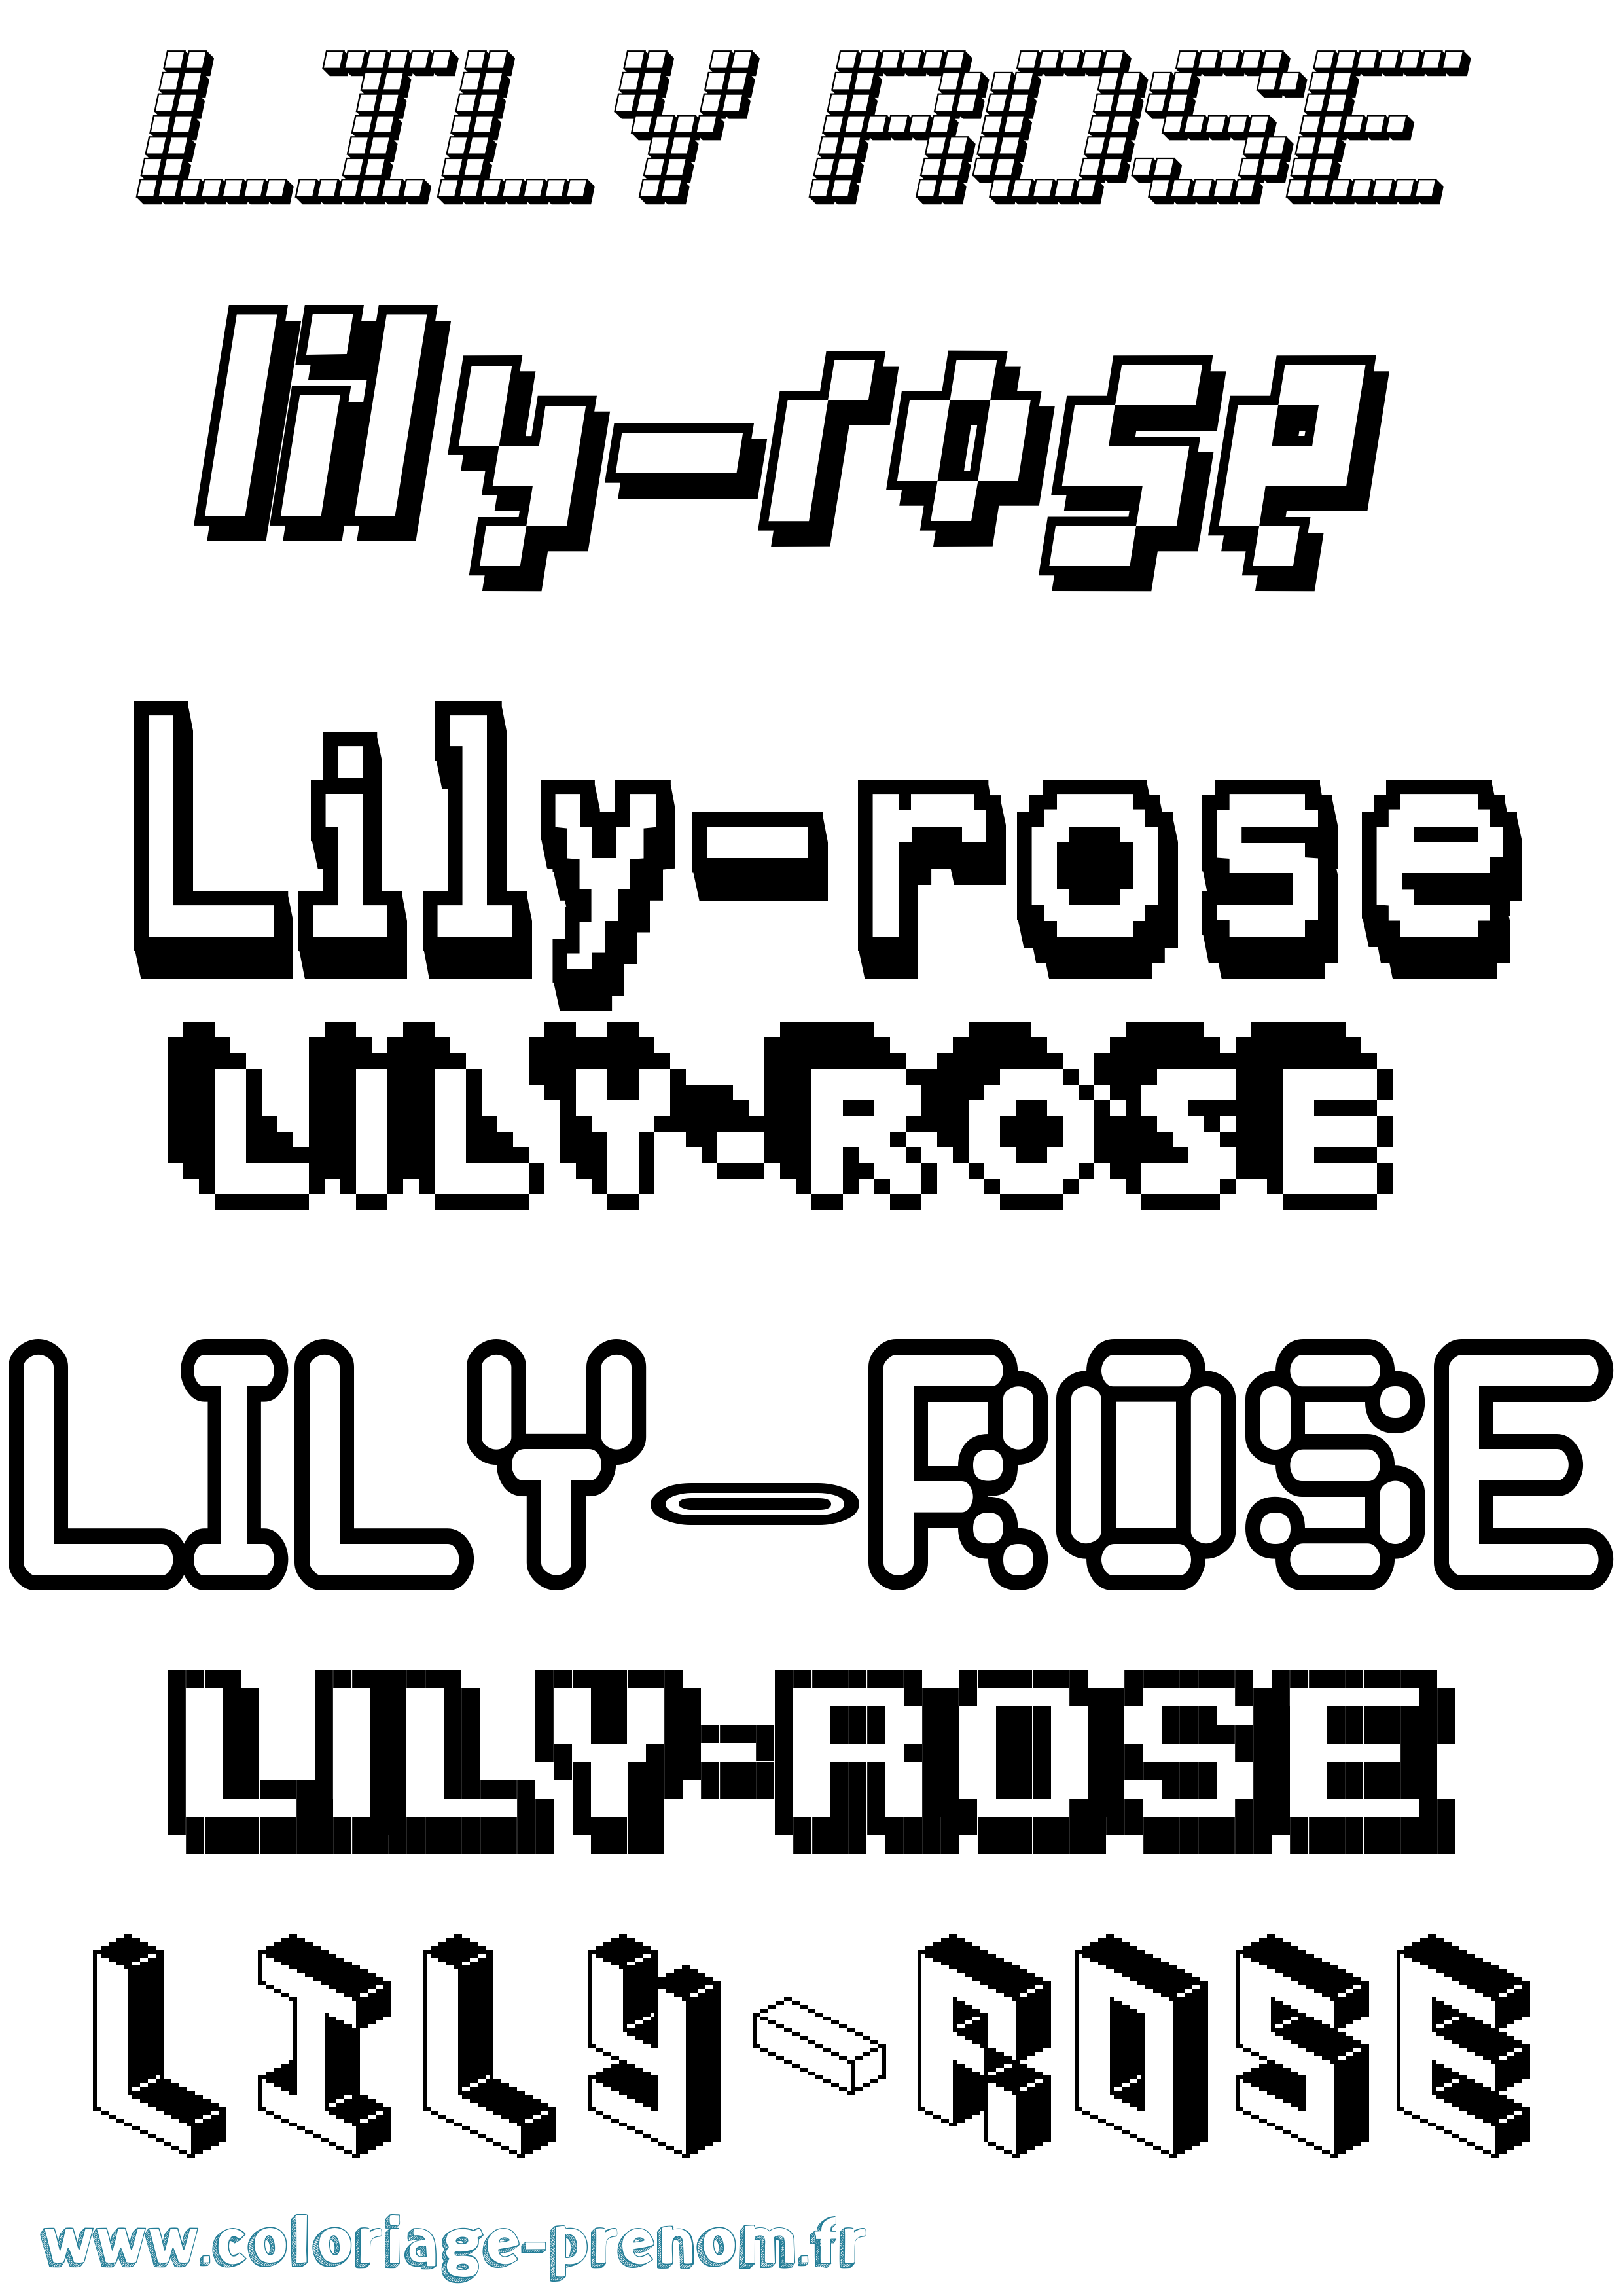 Coloriage prénom Lily-Rose